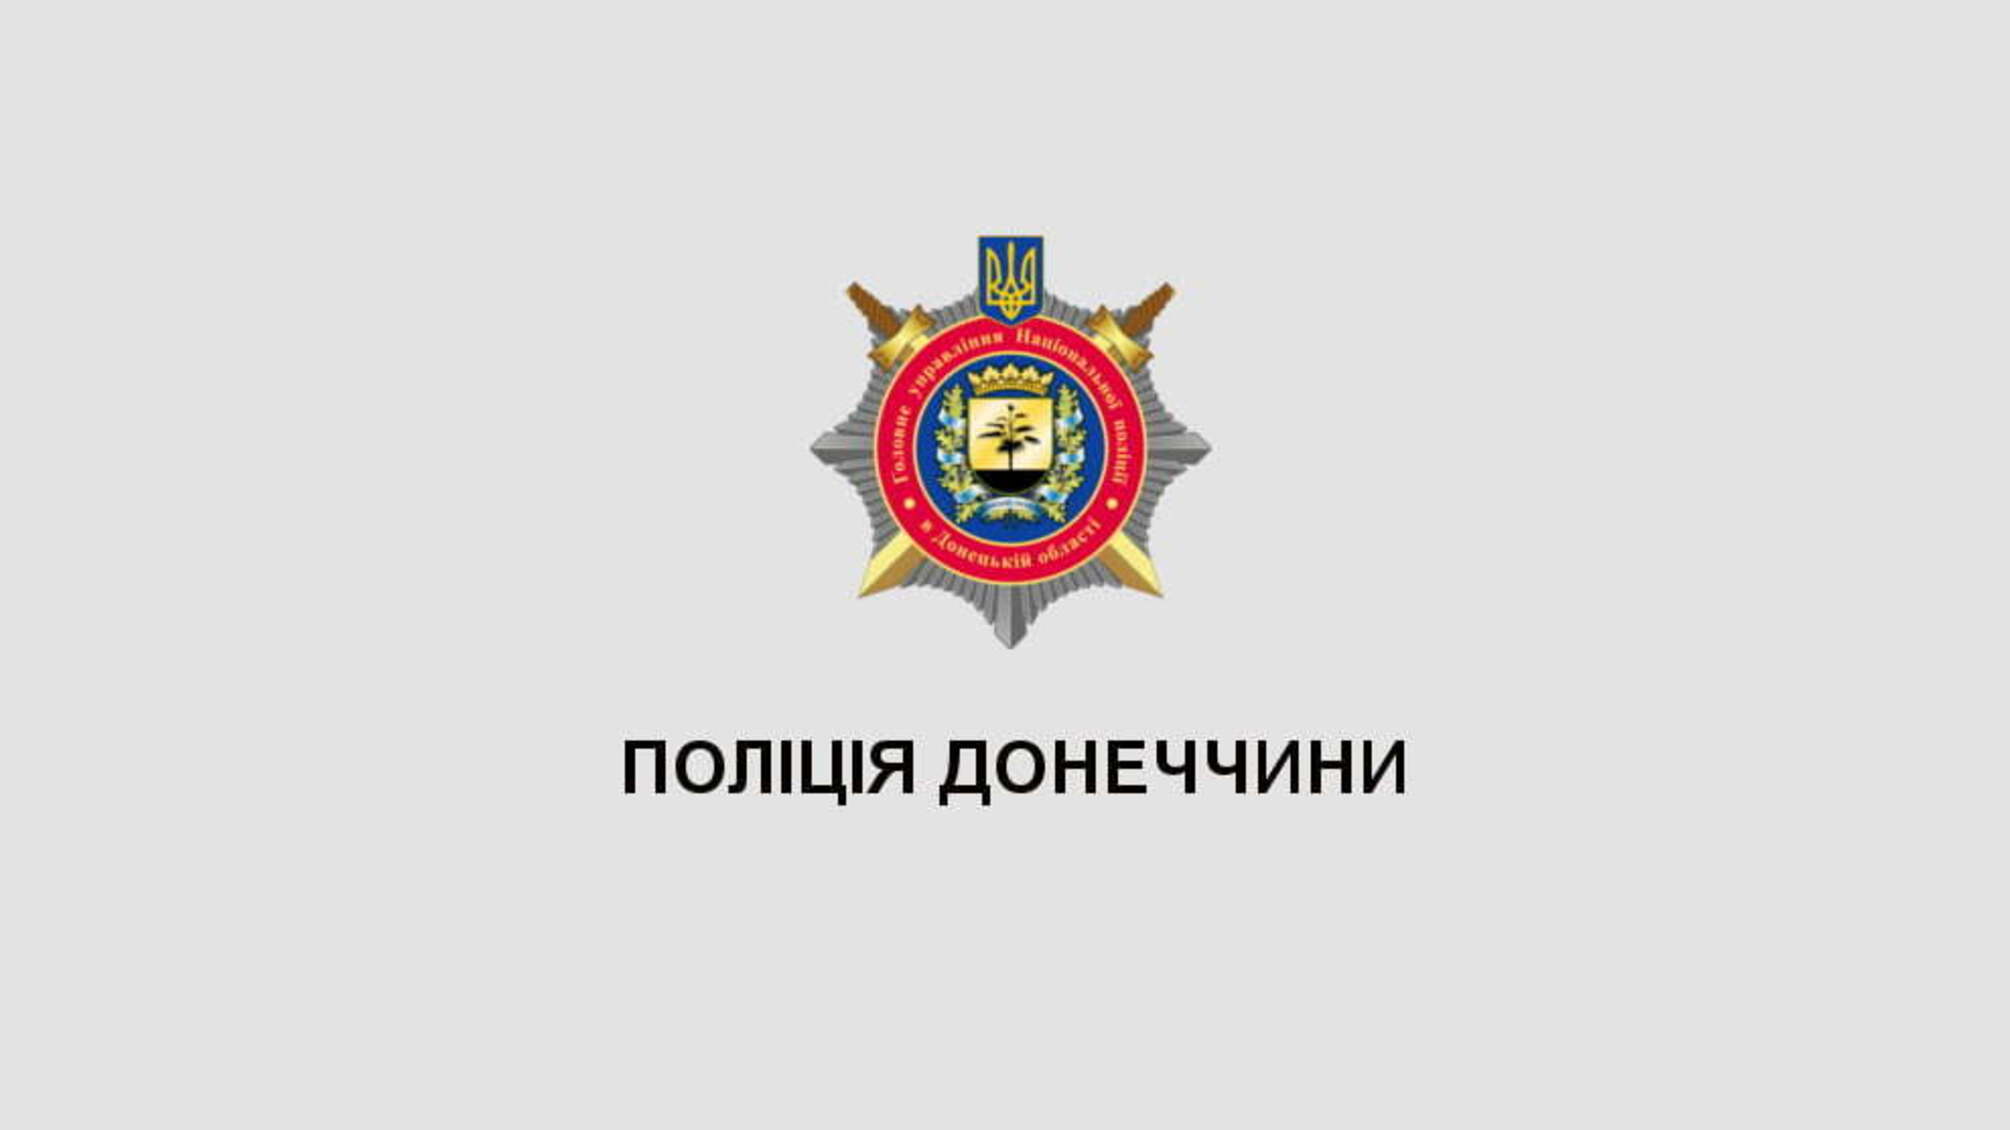 За безпекою у курортних районах Донеччини стежить туристична поліція (ВІДЕО)